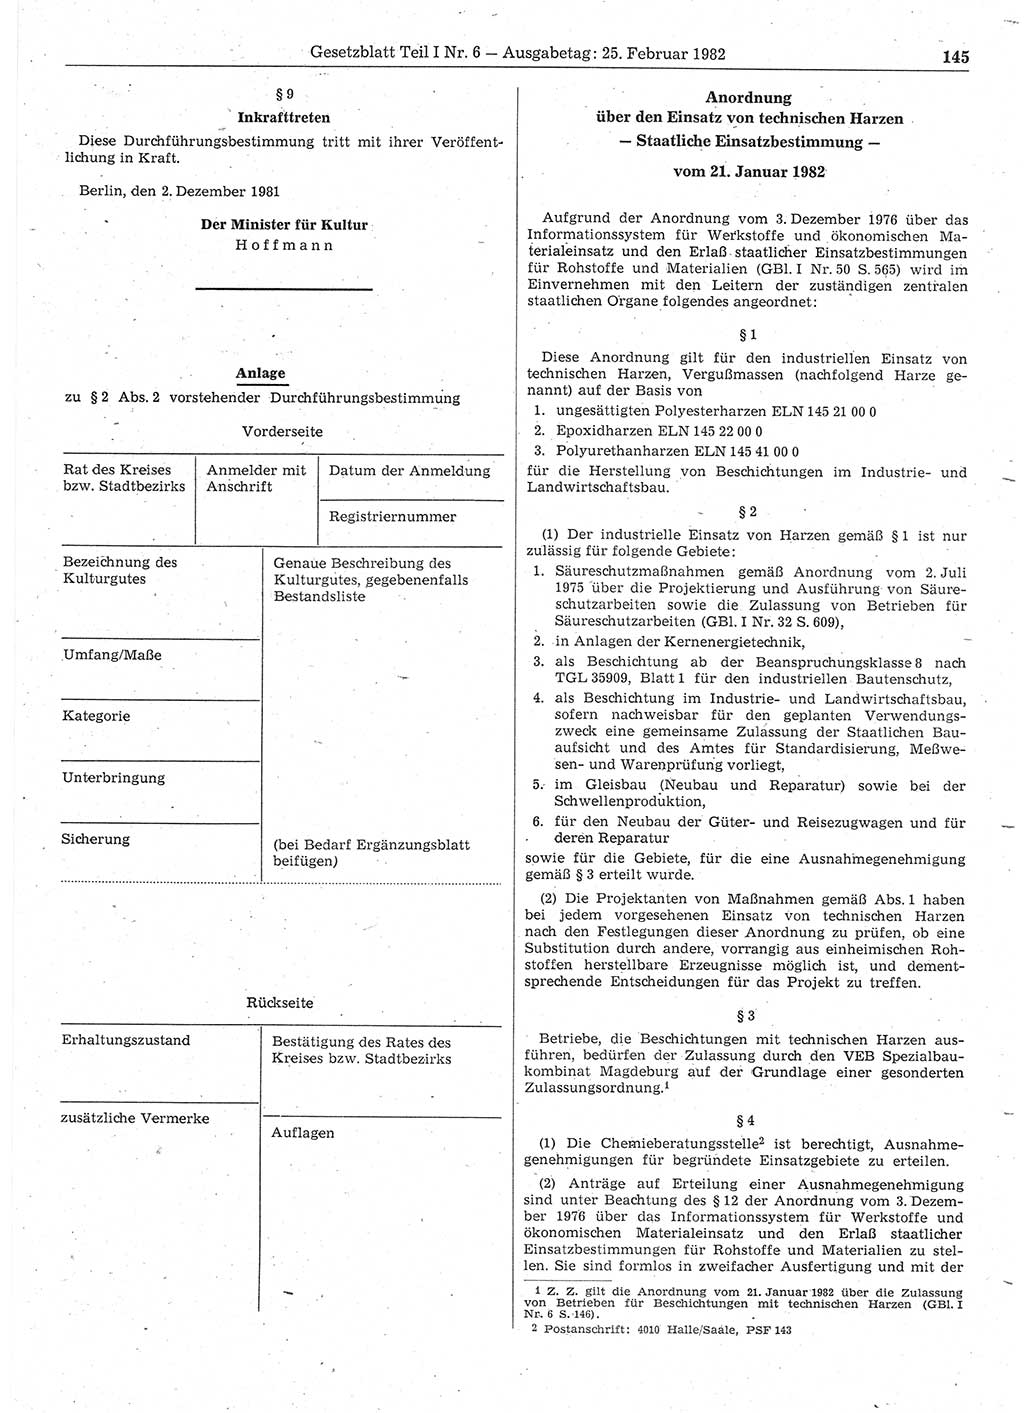 Gesetzblatt (GBl.) der Deutschen Demokratischen Republik (DDR) Teil Ⅰ 1982, Seite 145 (GBl. DDR Ⅰ 1982, S. 145)